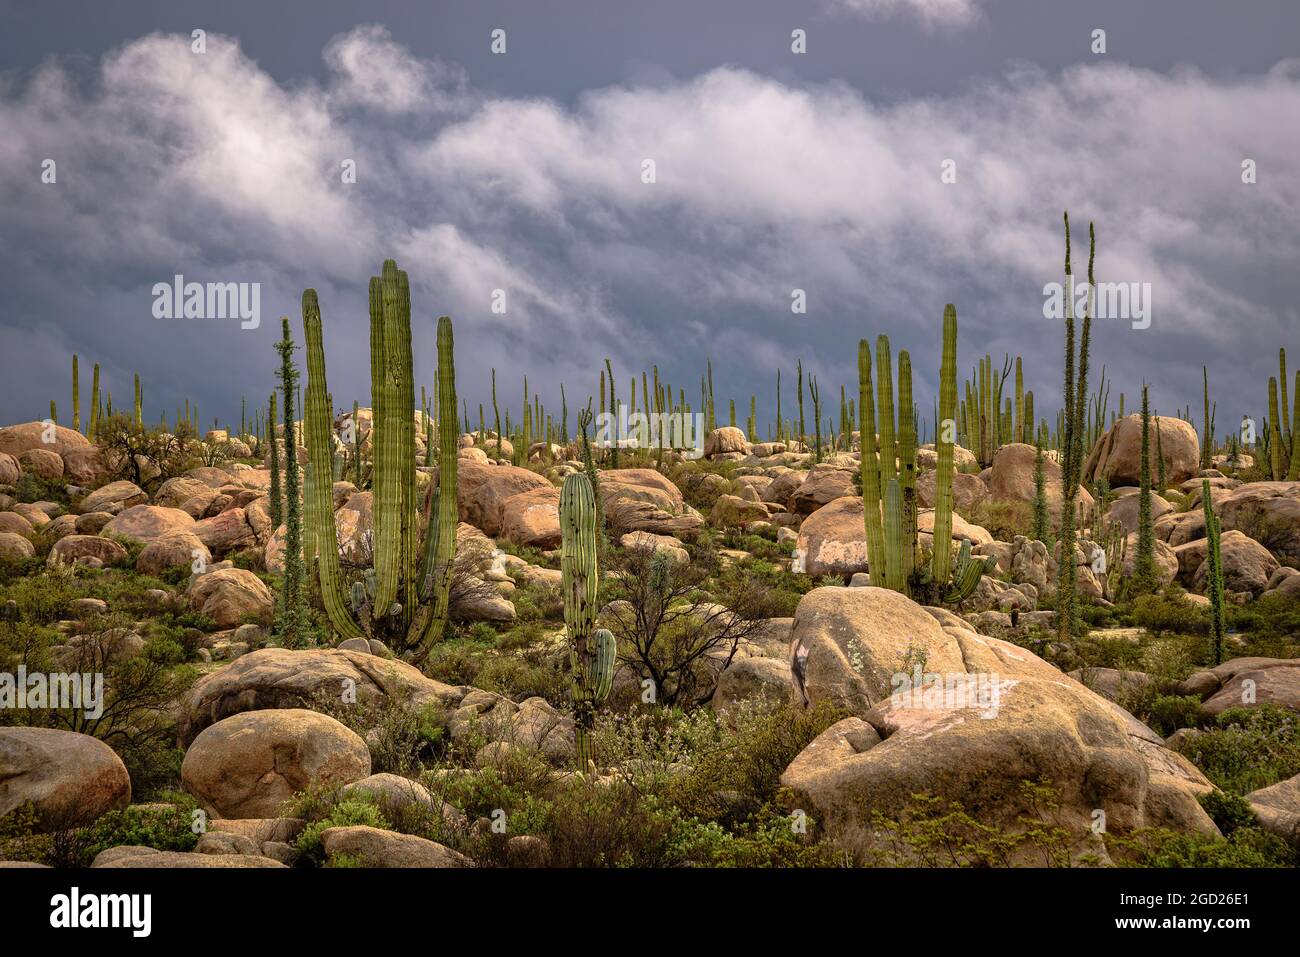 Boojum trees and Cardon cactus; Valle de Cirios Area Protegida, Baja California, Mexico. Stock Photo